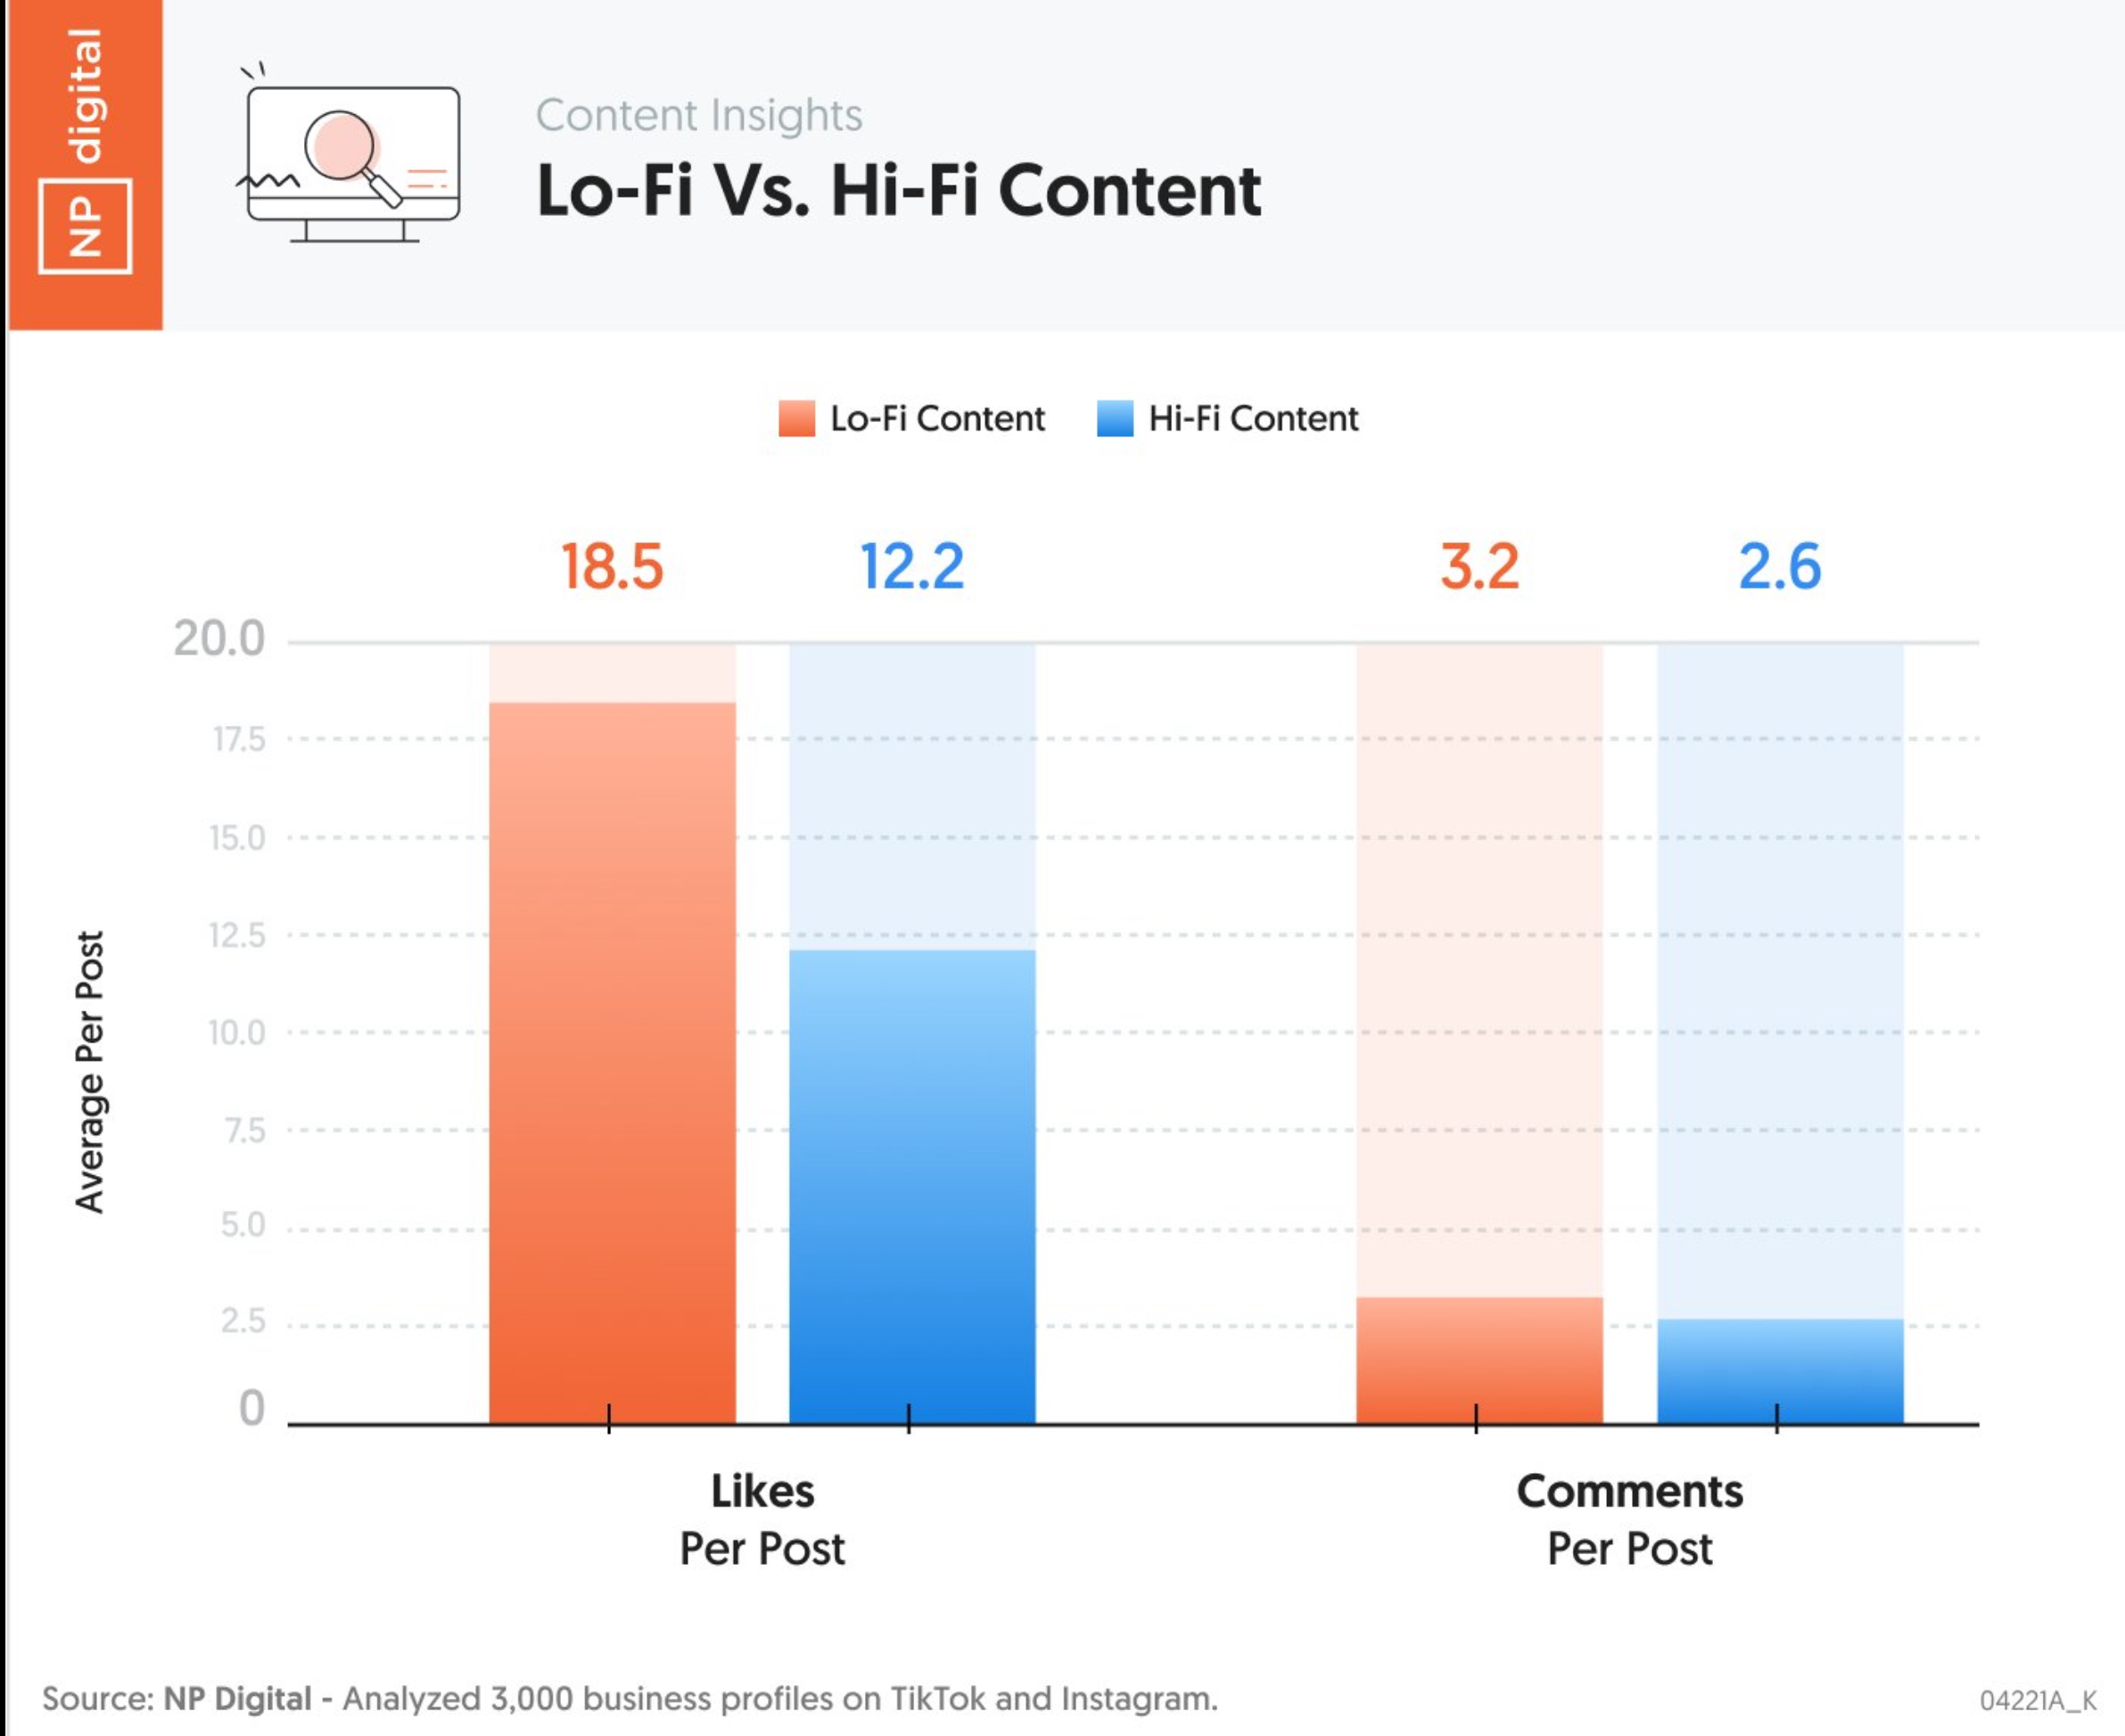 Le contenu lo Fi surperforme sur les contenus hi fi plus chers à produire @chiffres NP Digital